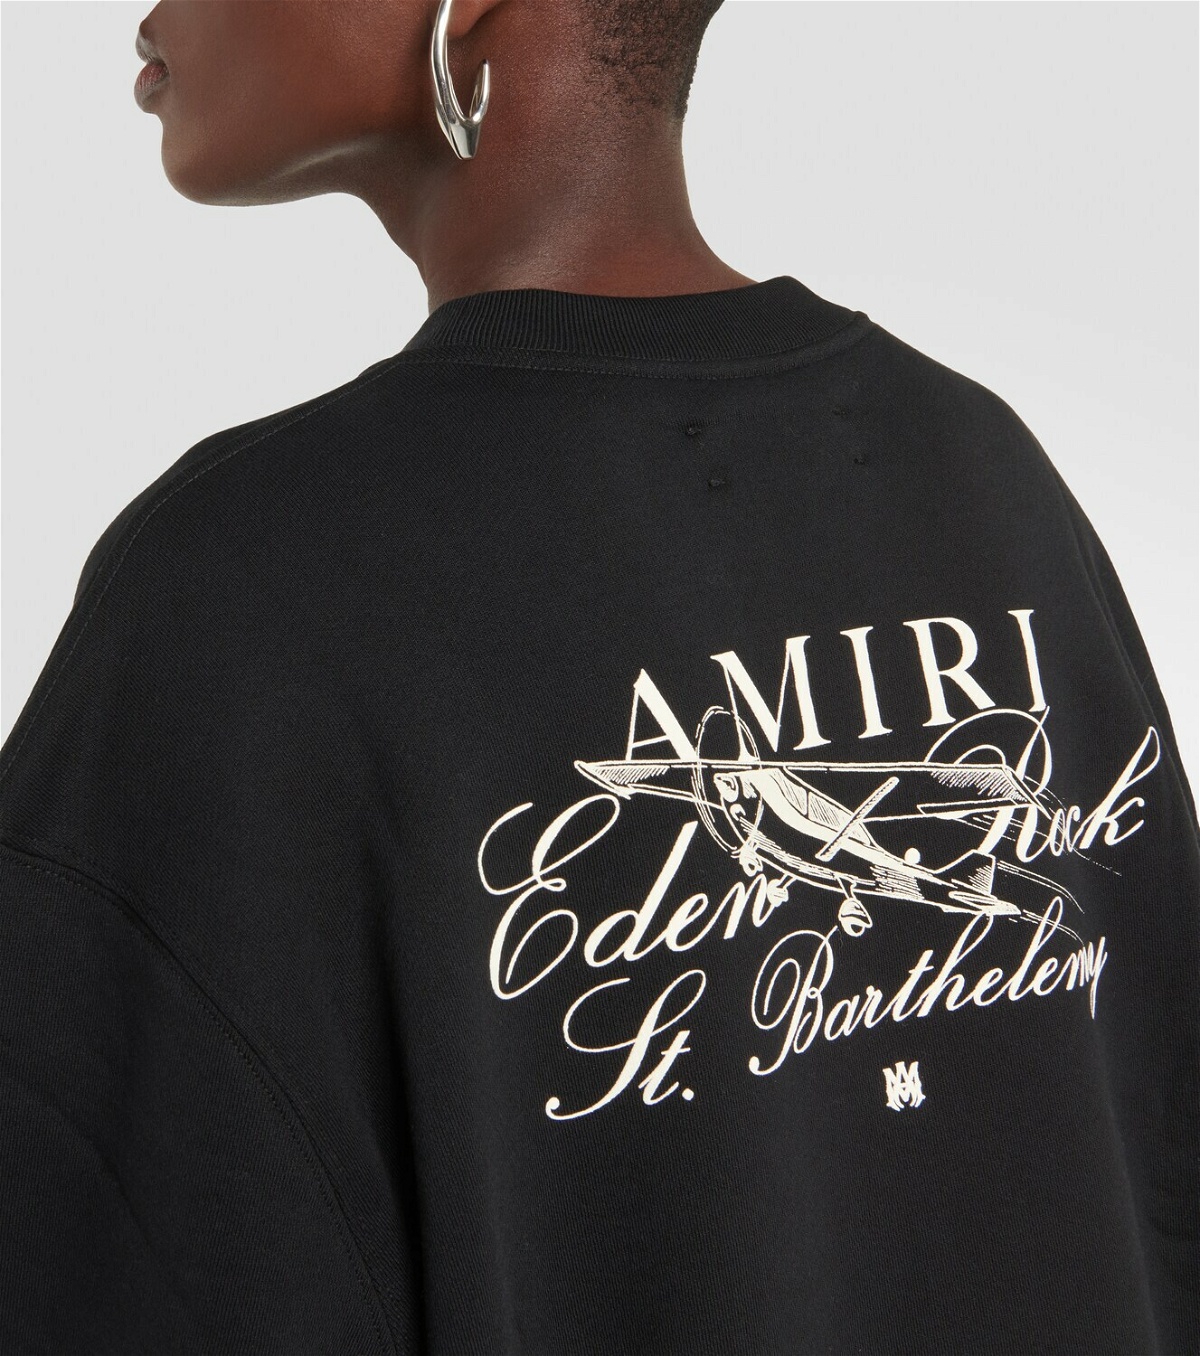 Amiri x Eden Rock cotton sweatshirt Amiri